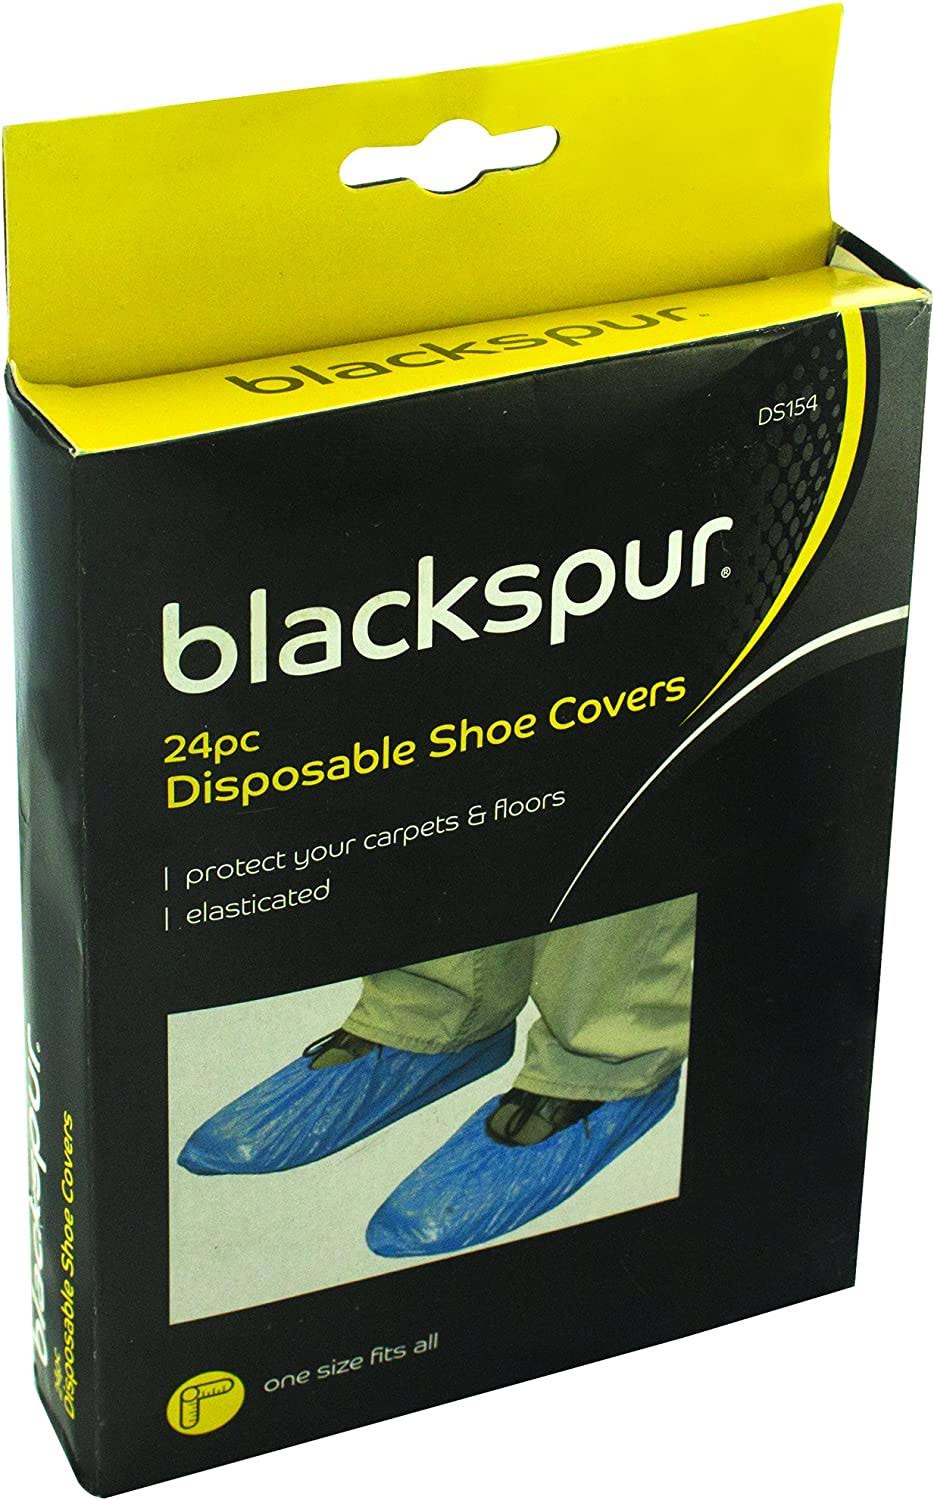 Blackspur Disposable Shoe Cover - 30 Disposable Shoe Cover